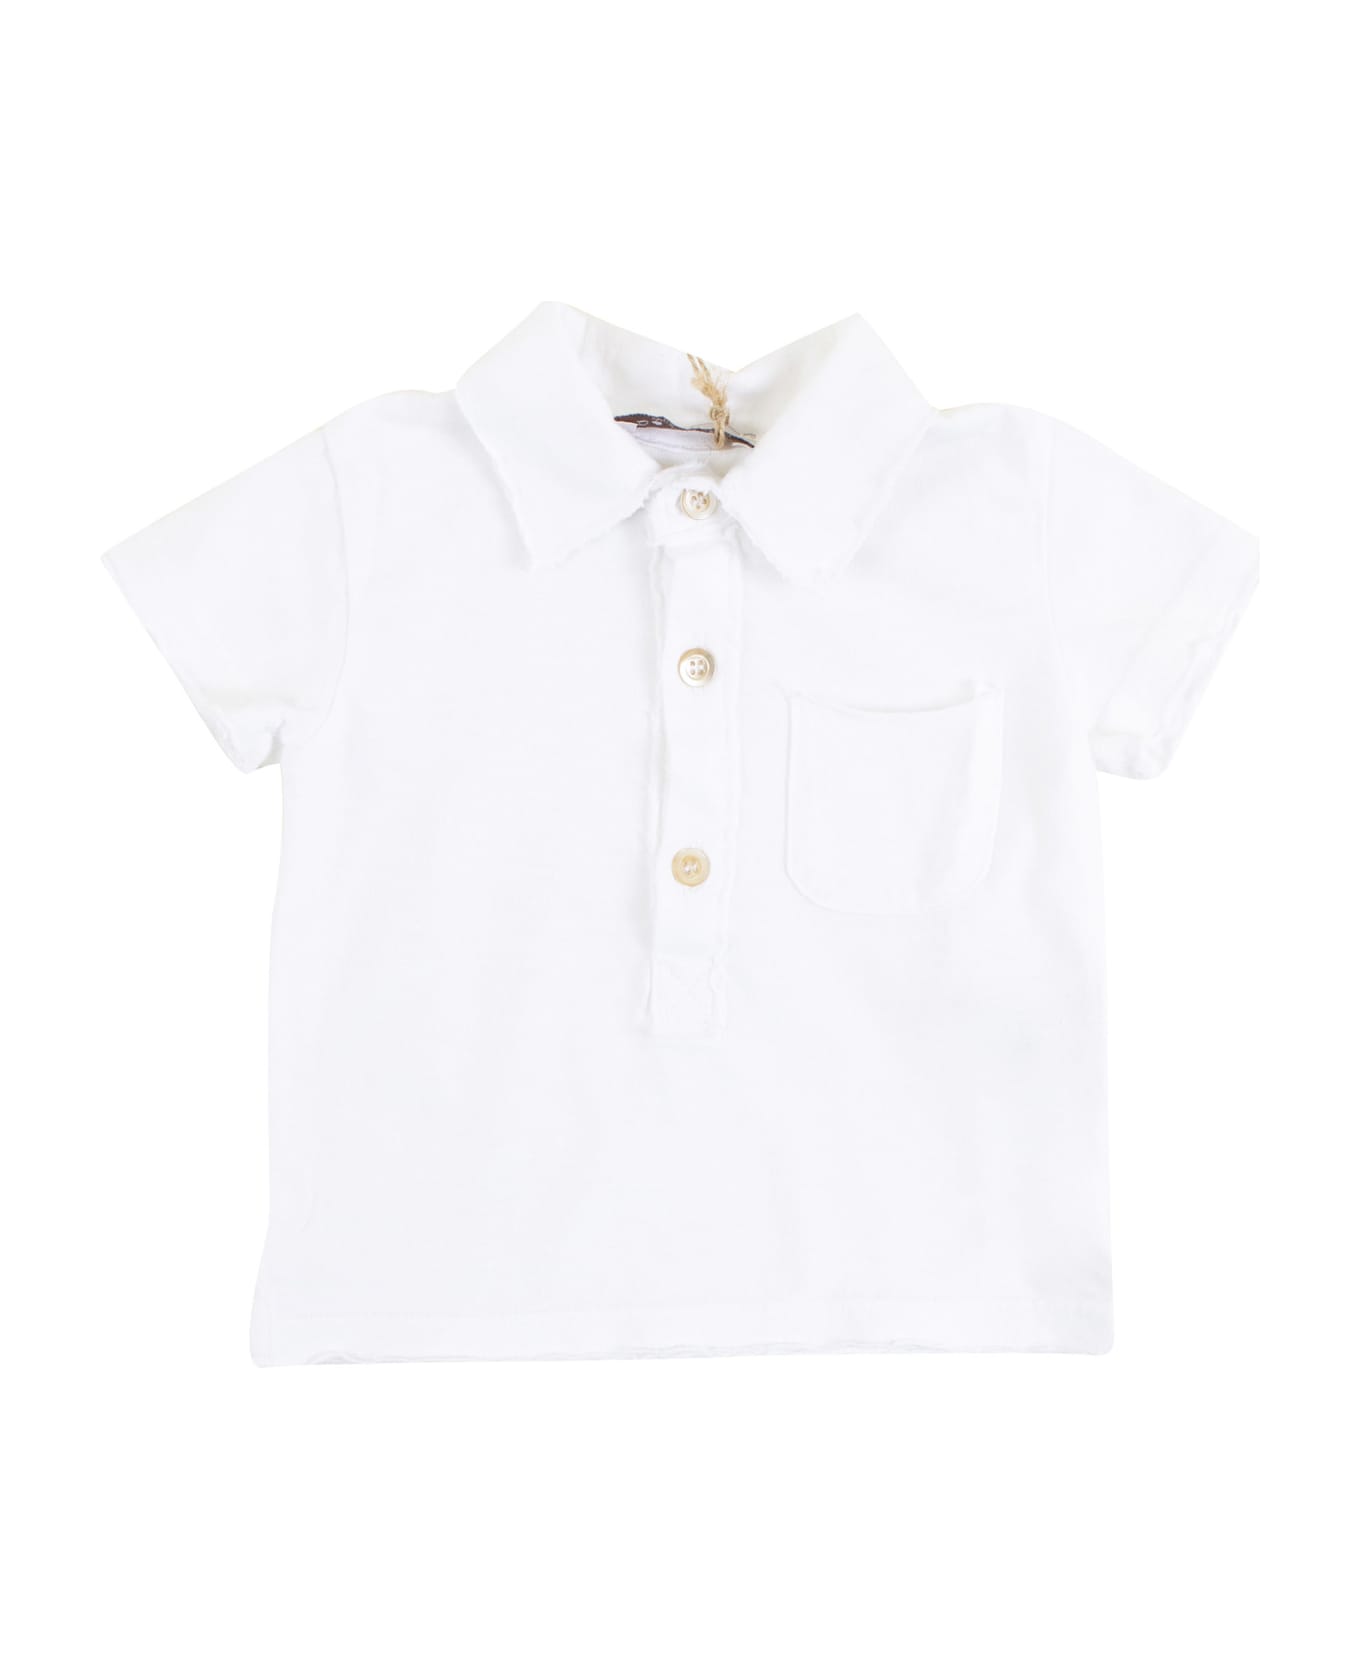 De Cavana Newborn Polo Shirt With Pocket - White